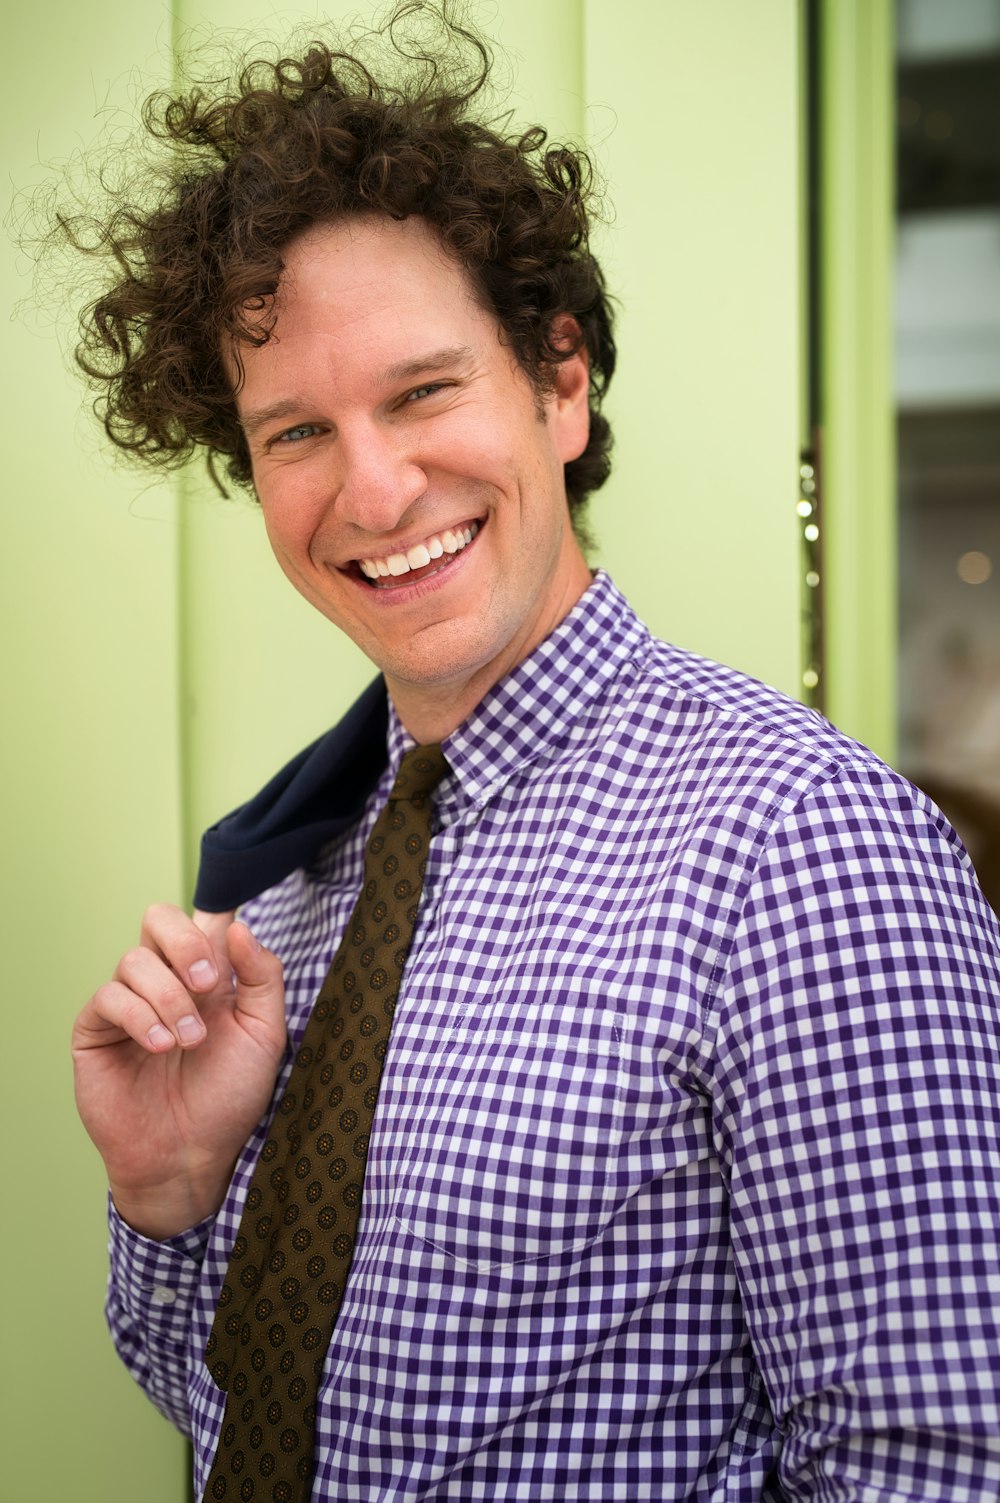 Hombre sonriente con camisa de vestir a cuadros azul y blanco